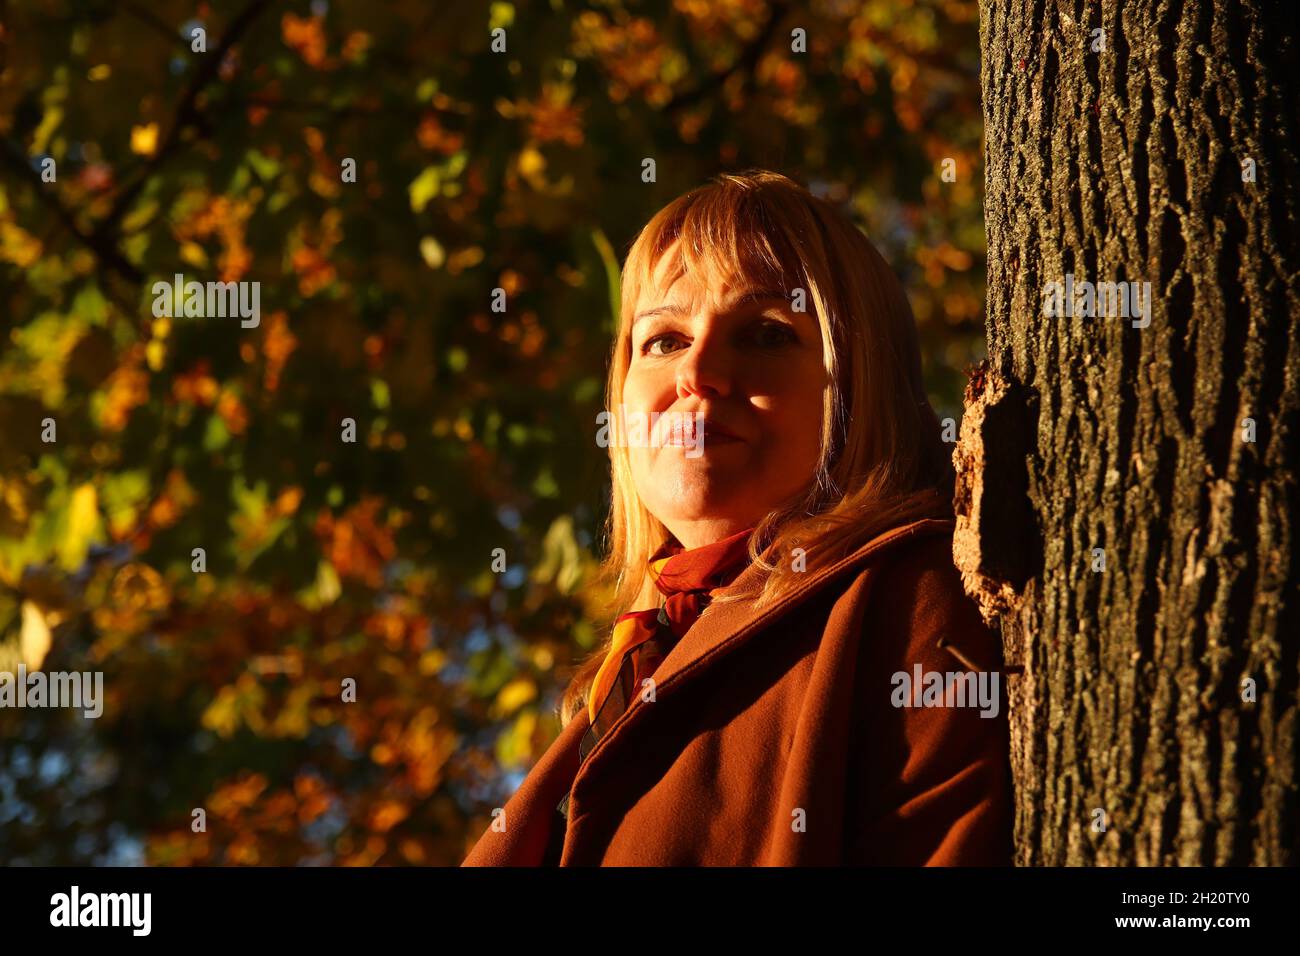 Porträt der hübschen kaukasischen blonden Frau in bunten dunklen Ahorn Herbst Park. Helle stilvolle Frau im Mantel in der Nähe Baumstamm. Hallo Herbst Konzept Stockfoto